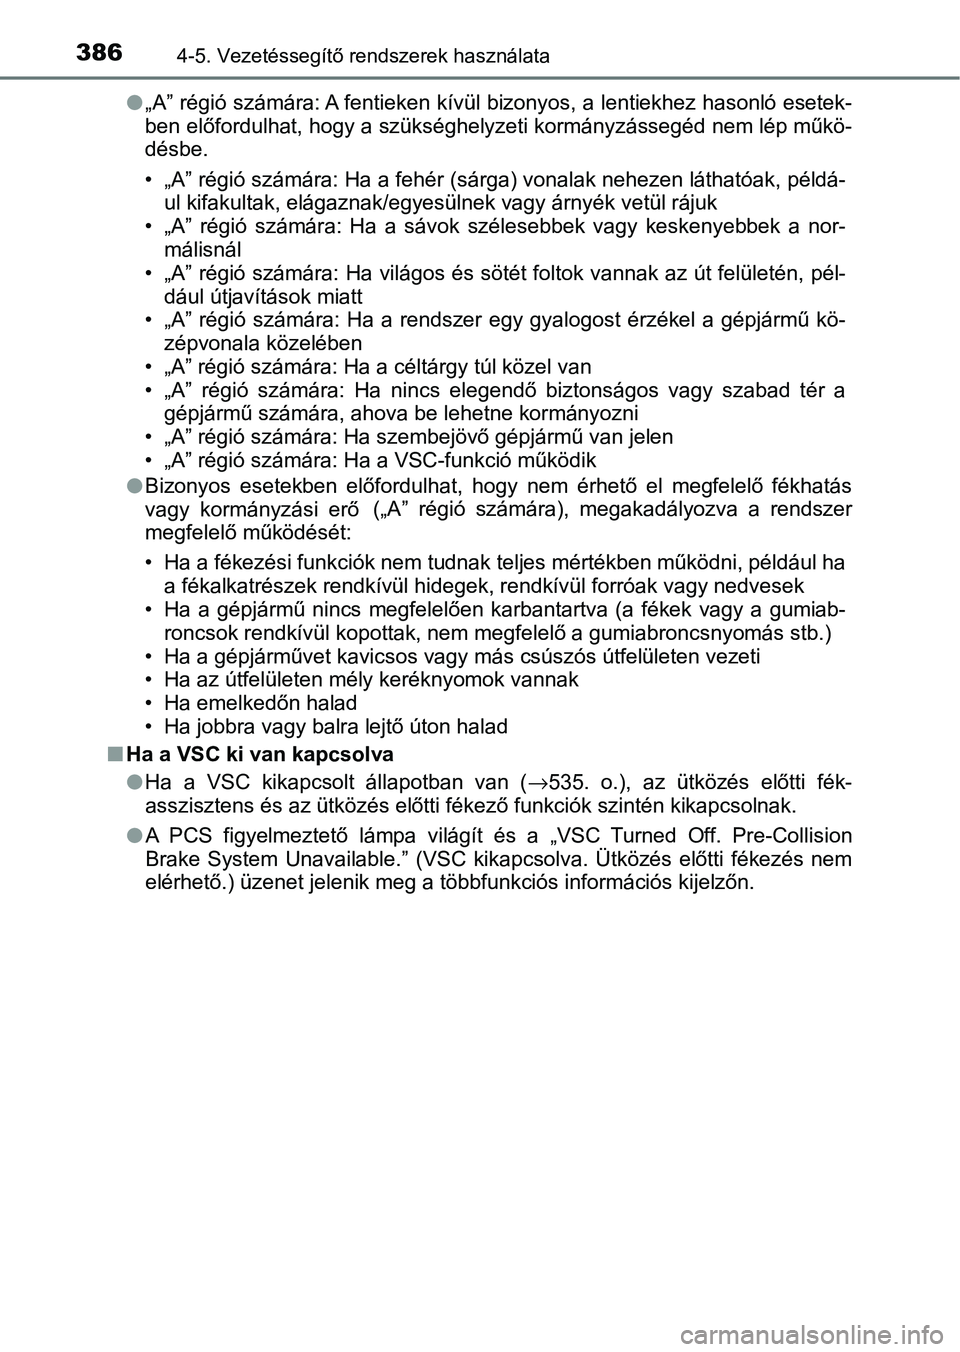 TOYOTA C-HR 2022  Kezelési útmutató (in Hungarian) 3864-5. Vezetéssegítő rendszerek használata
l„A” régió számára: A fentieken kívül bizonyos, a lentiekhez hasonló esetek-
ben előfordulhat, hogy a szükséghelyzeti kormányzássegéd n